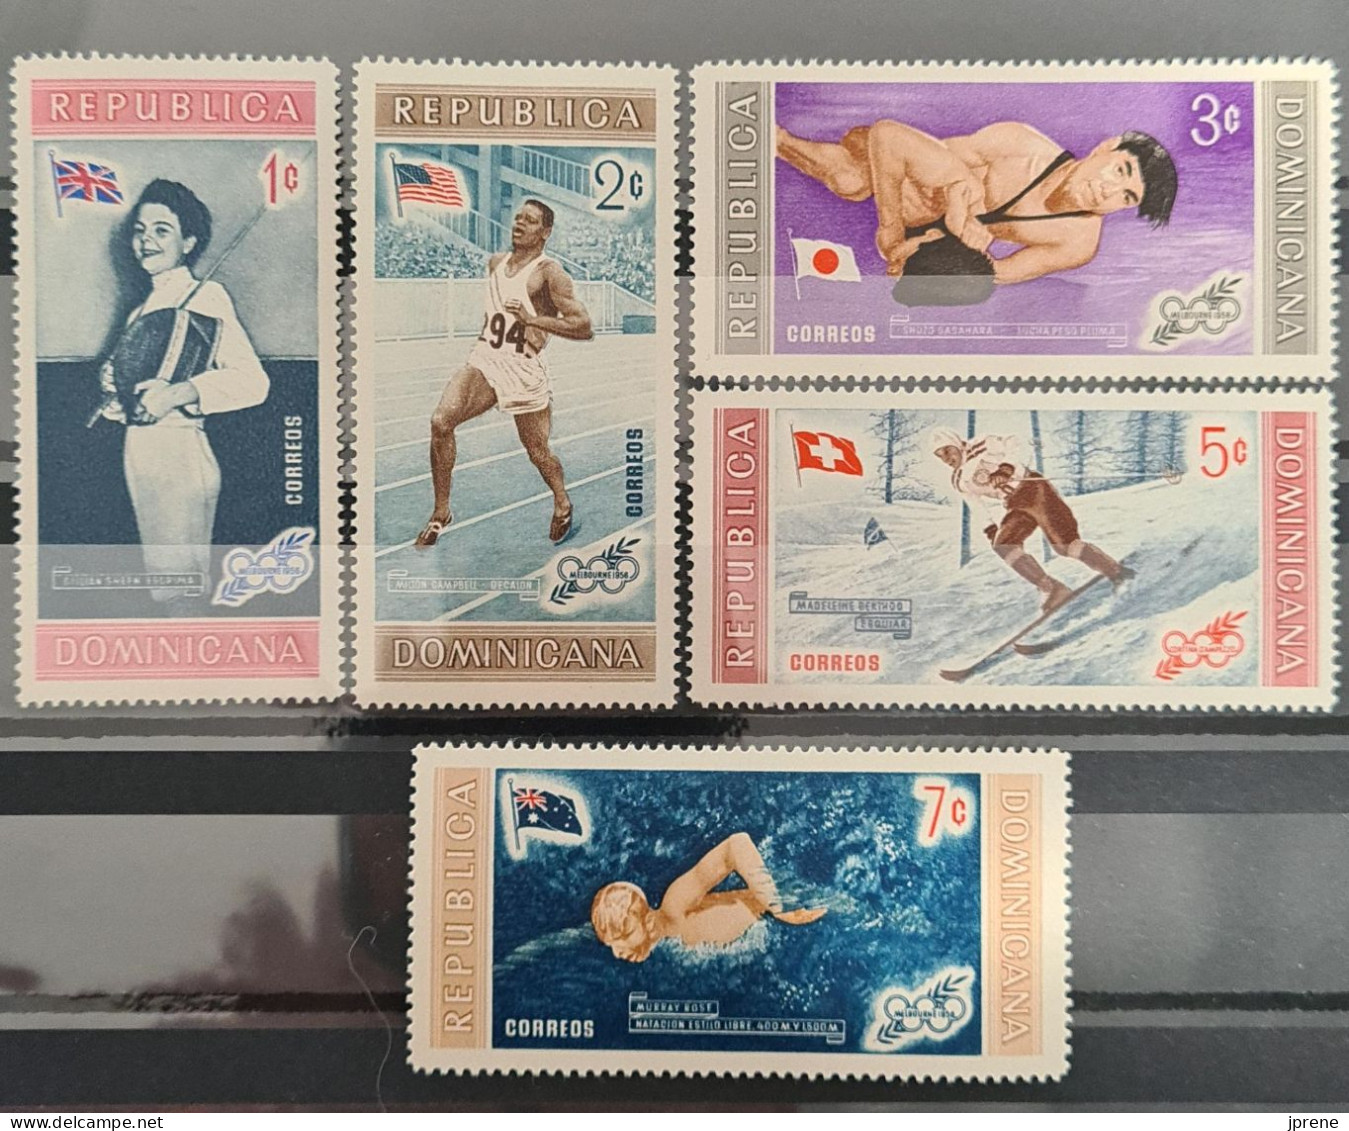 Lots de timbres sur le thème - JEUX OLYMPIQUES - Offre groupée, PROMO SPECIALE J.O. -50%, cote 164€